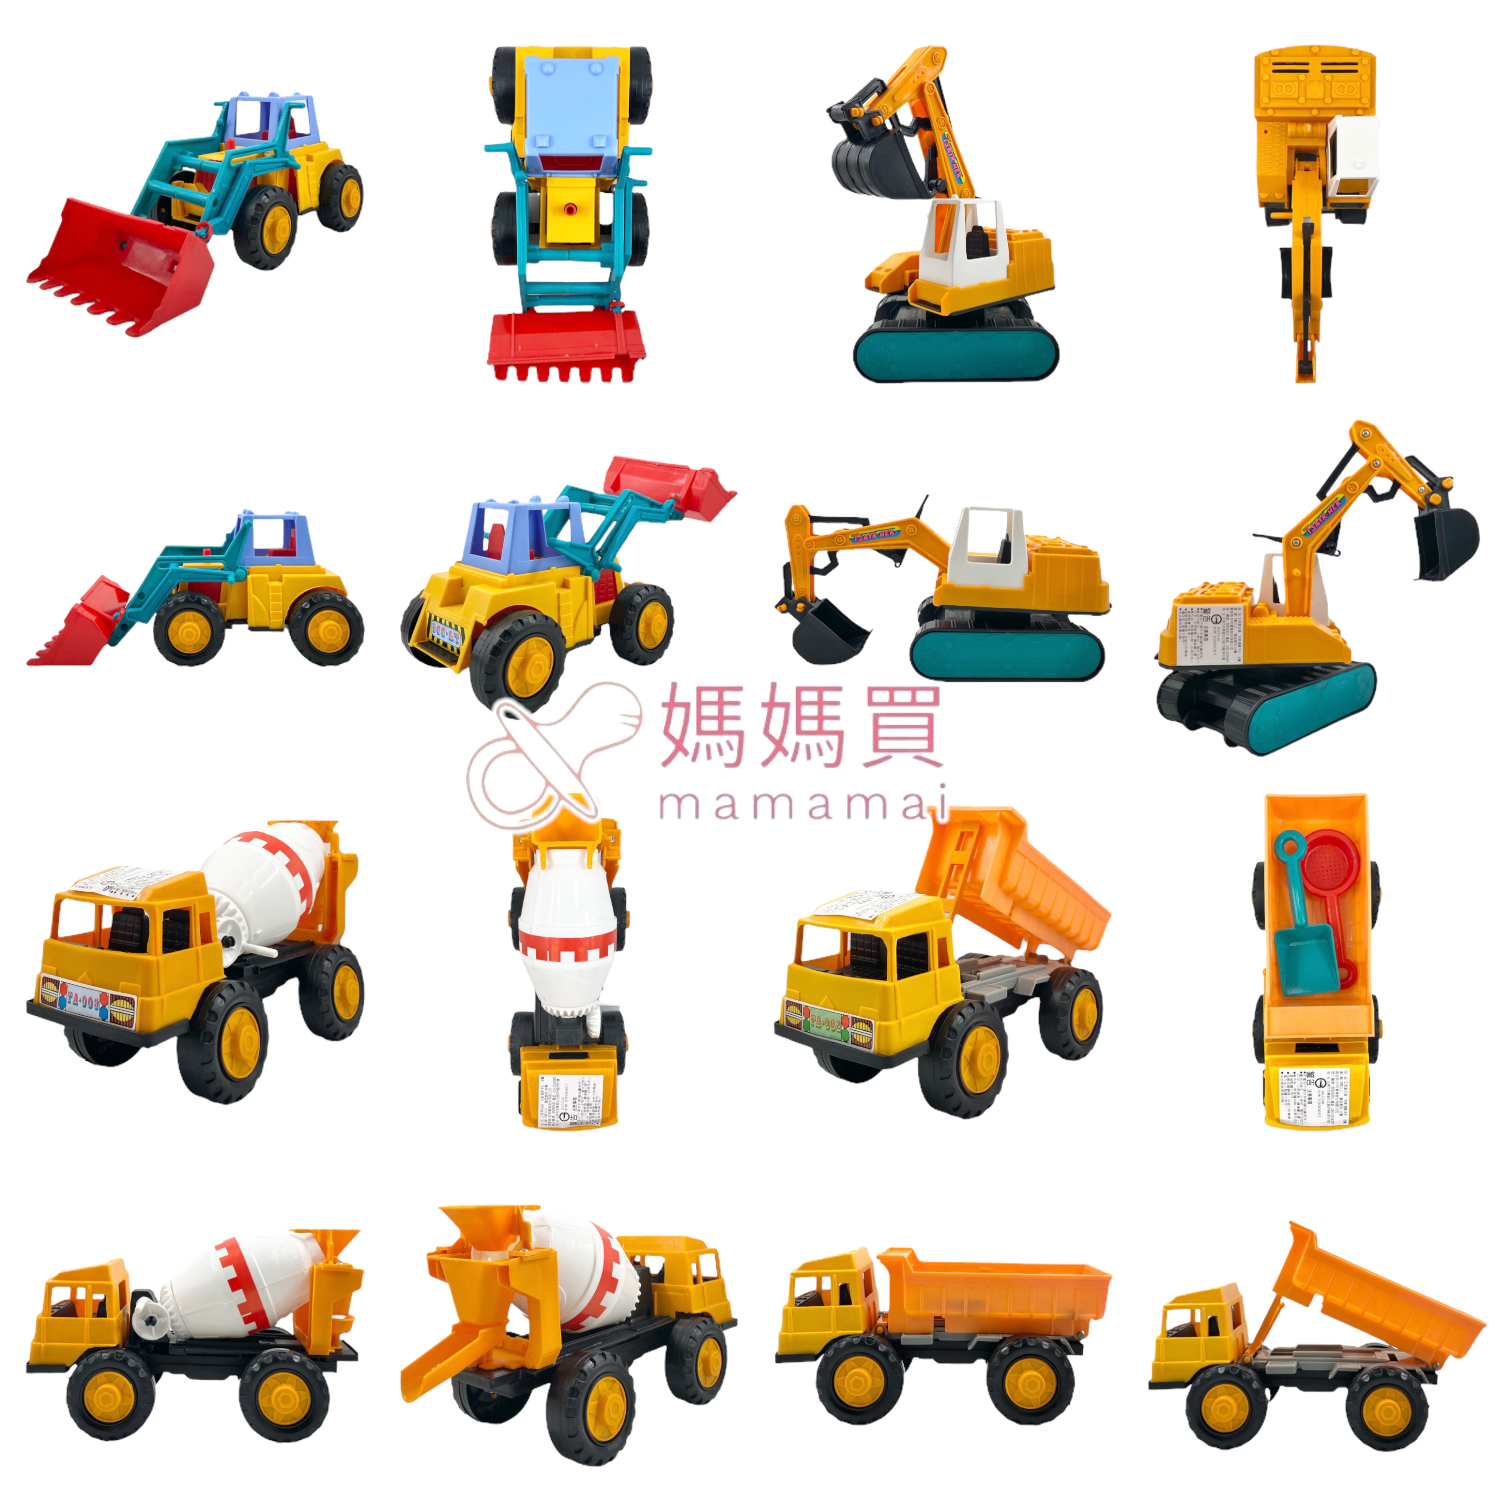 🌟媽媽買🌟 工程車 台灣製造 檢驗合格 挖土機 砂石車 水泥車 推土機 玩具車 沙灘車 兒童玩具 材和 滑車工程車